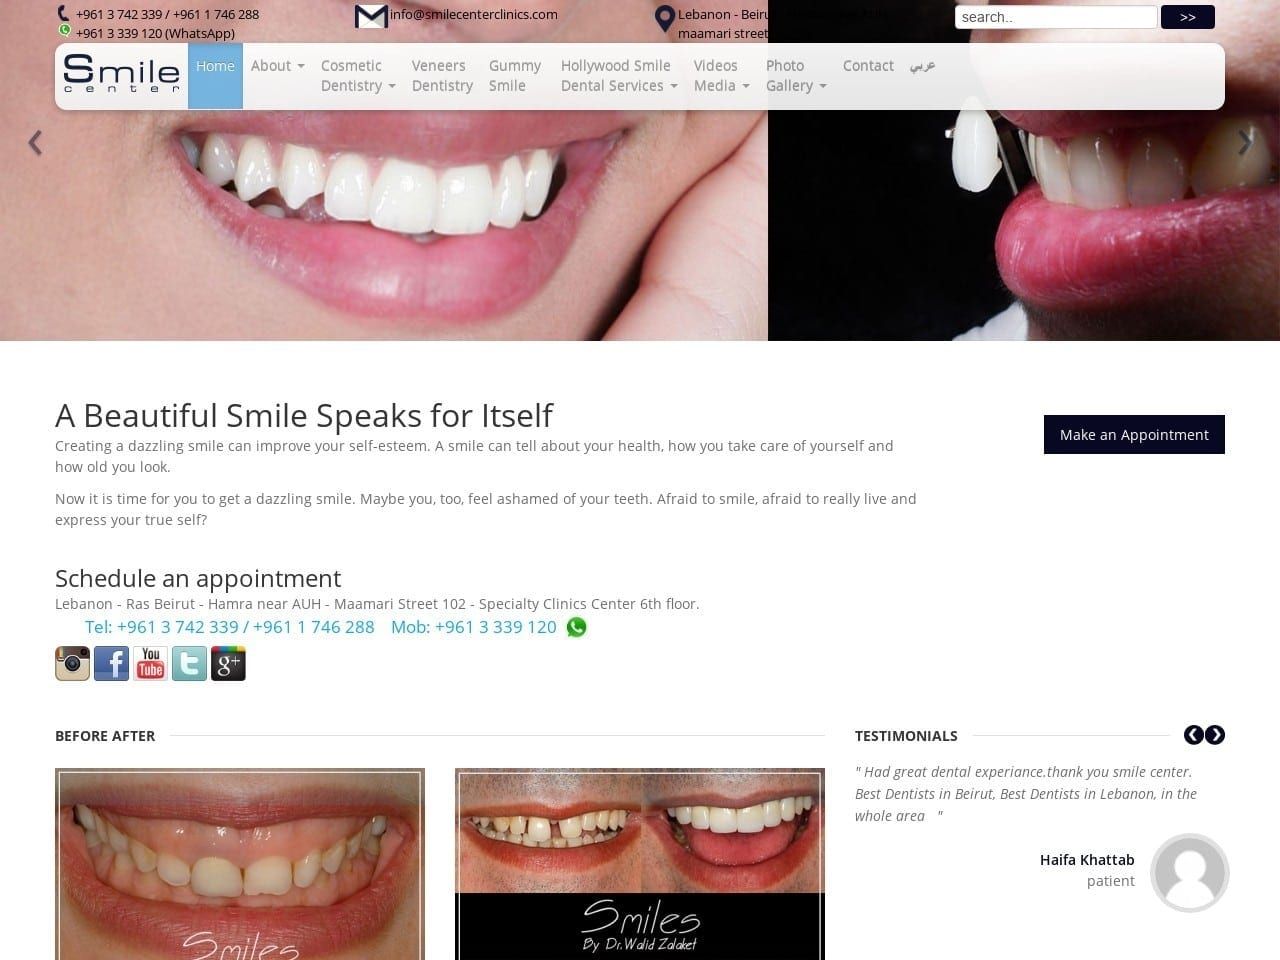 Smile Center Clinics Website Screenshot from smilecenterclinics.com